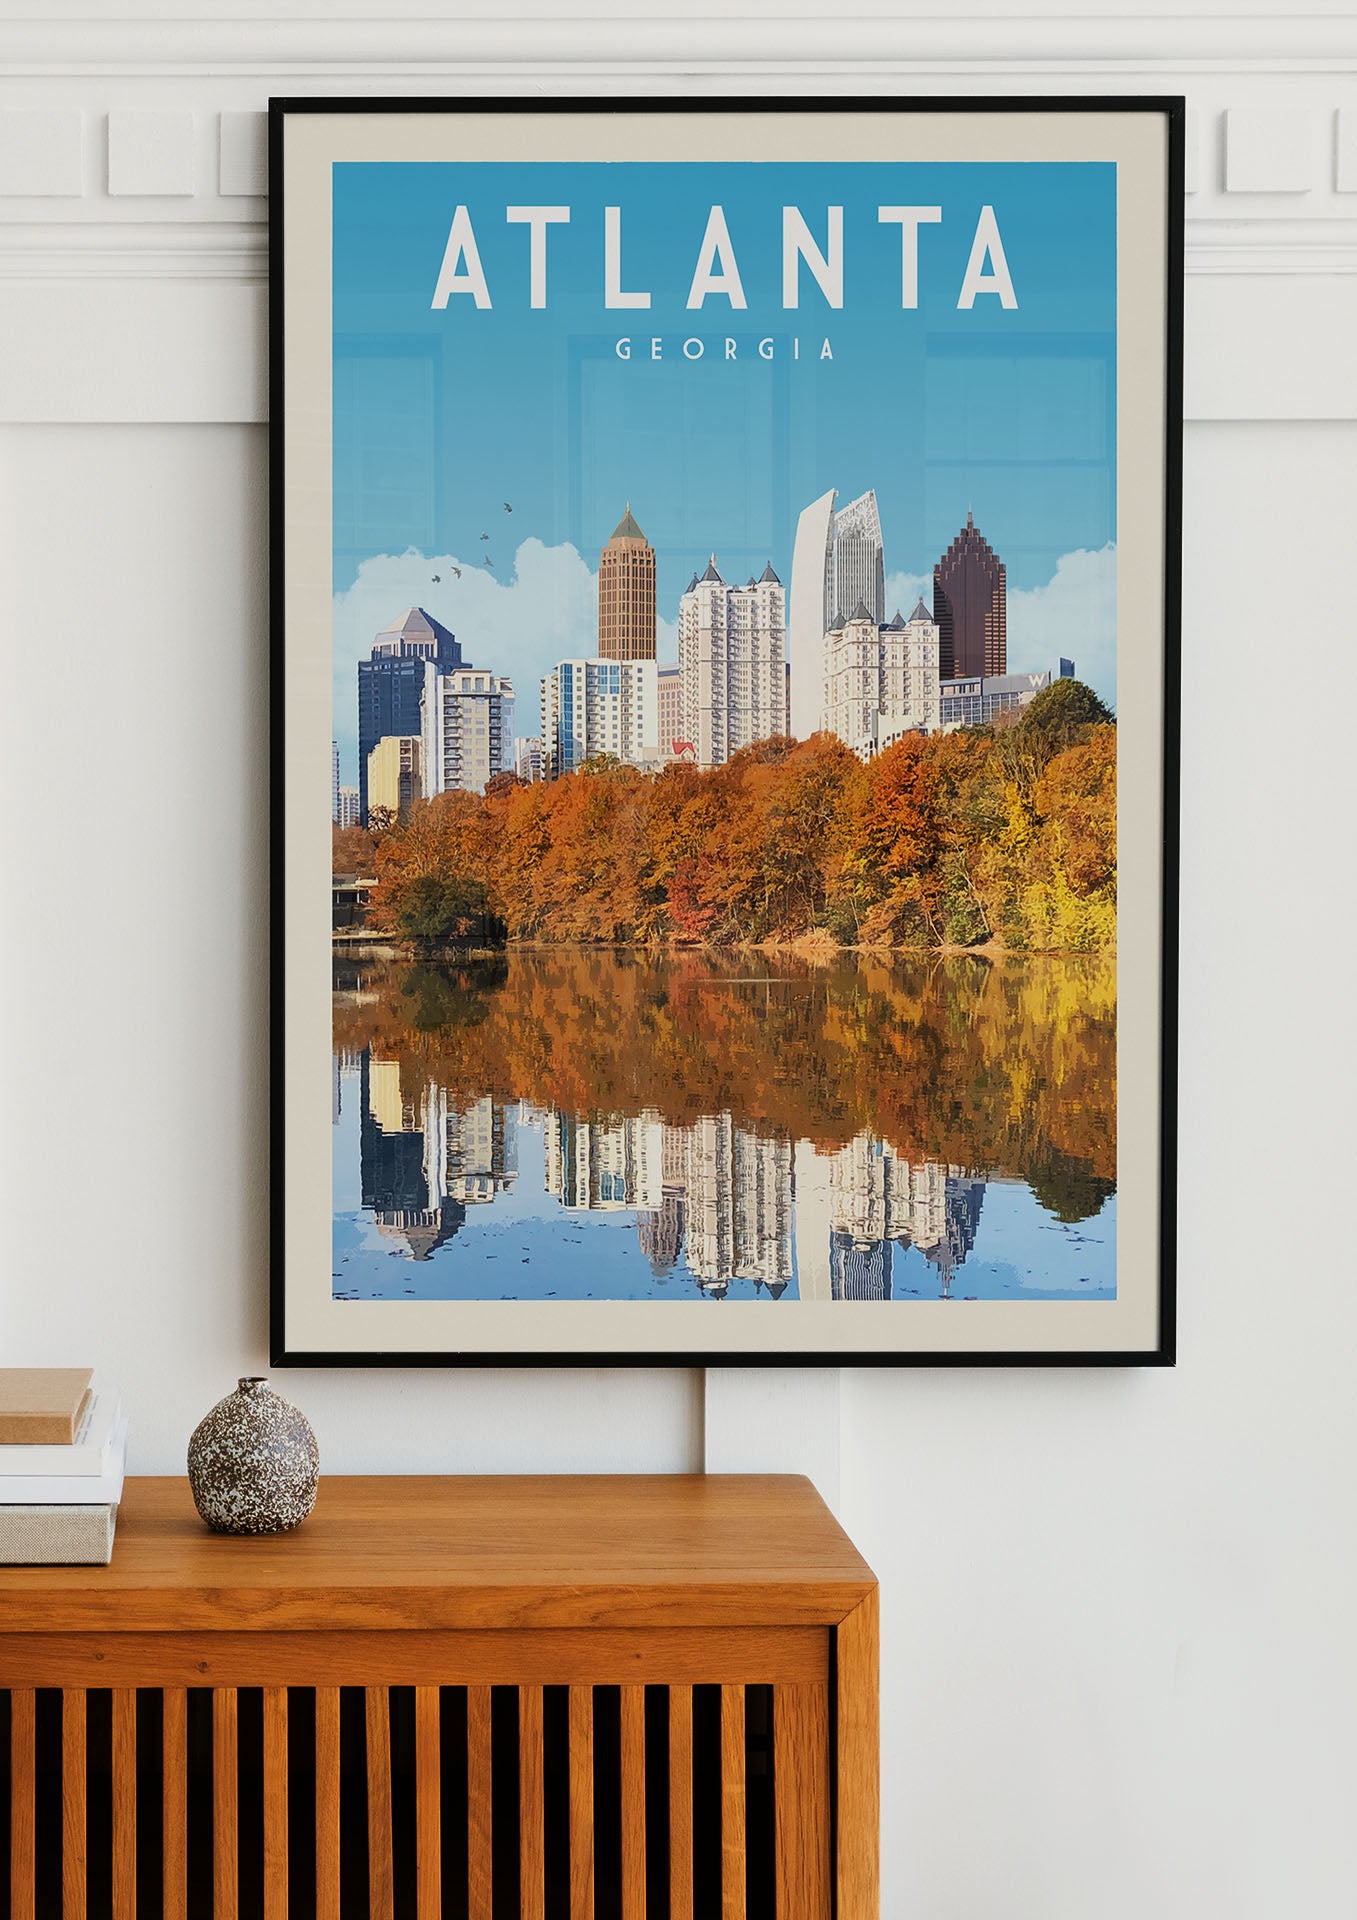 Atlanta Posters Printing